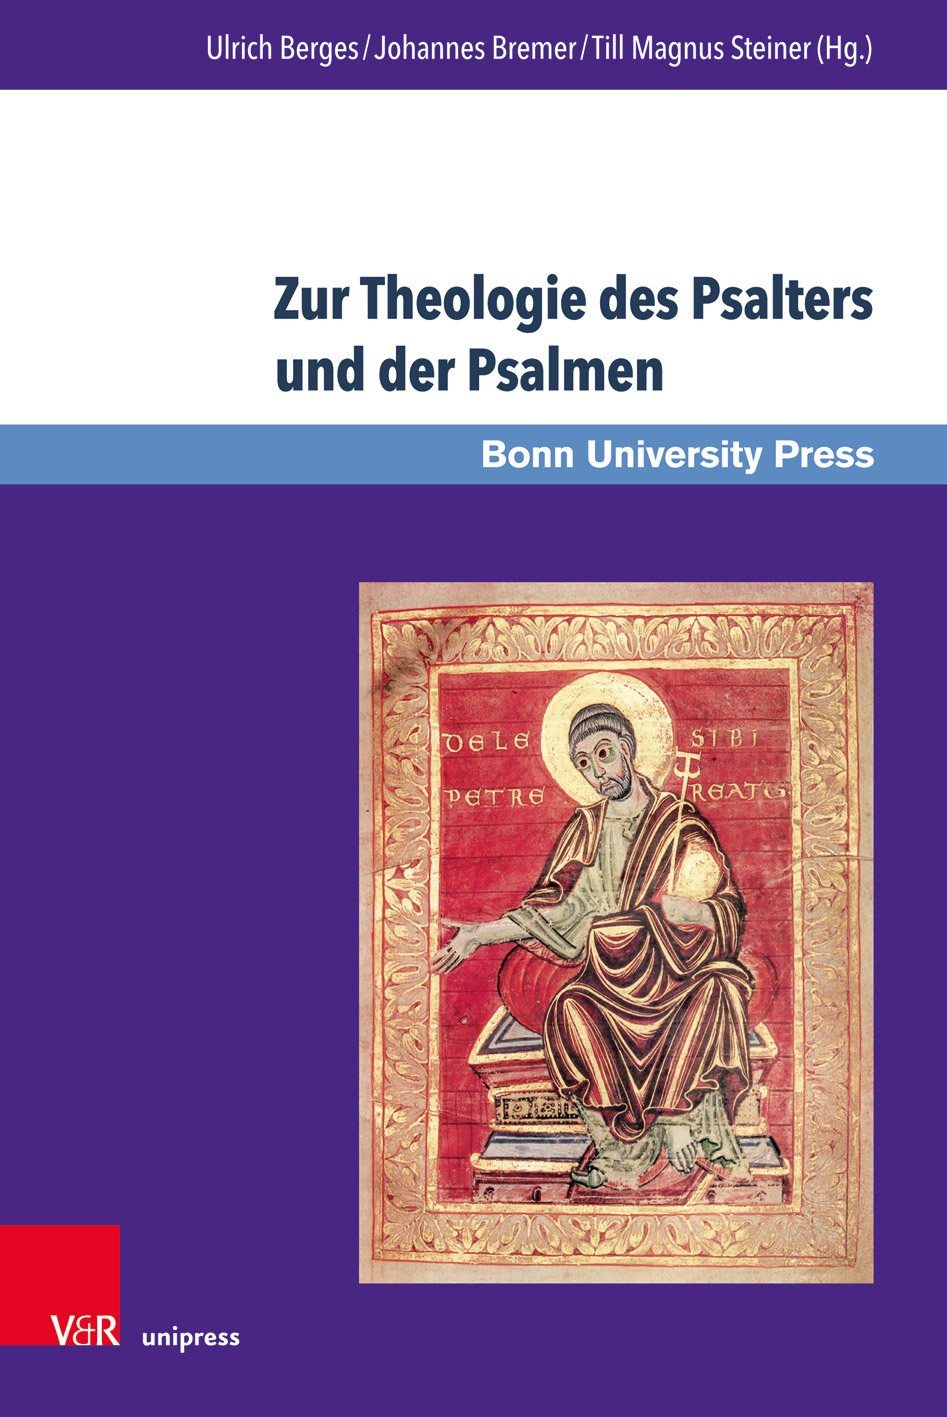 Zur Theologie des Psalters und der Psalmen